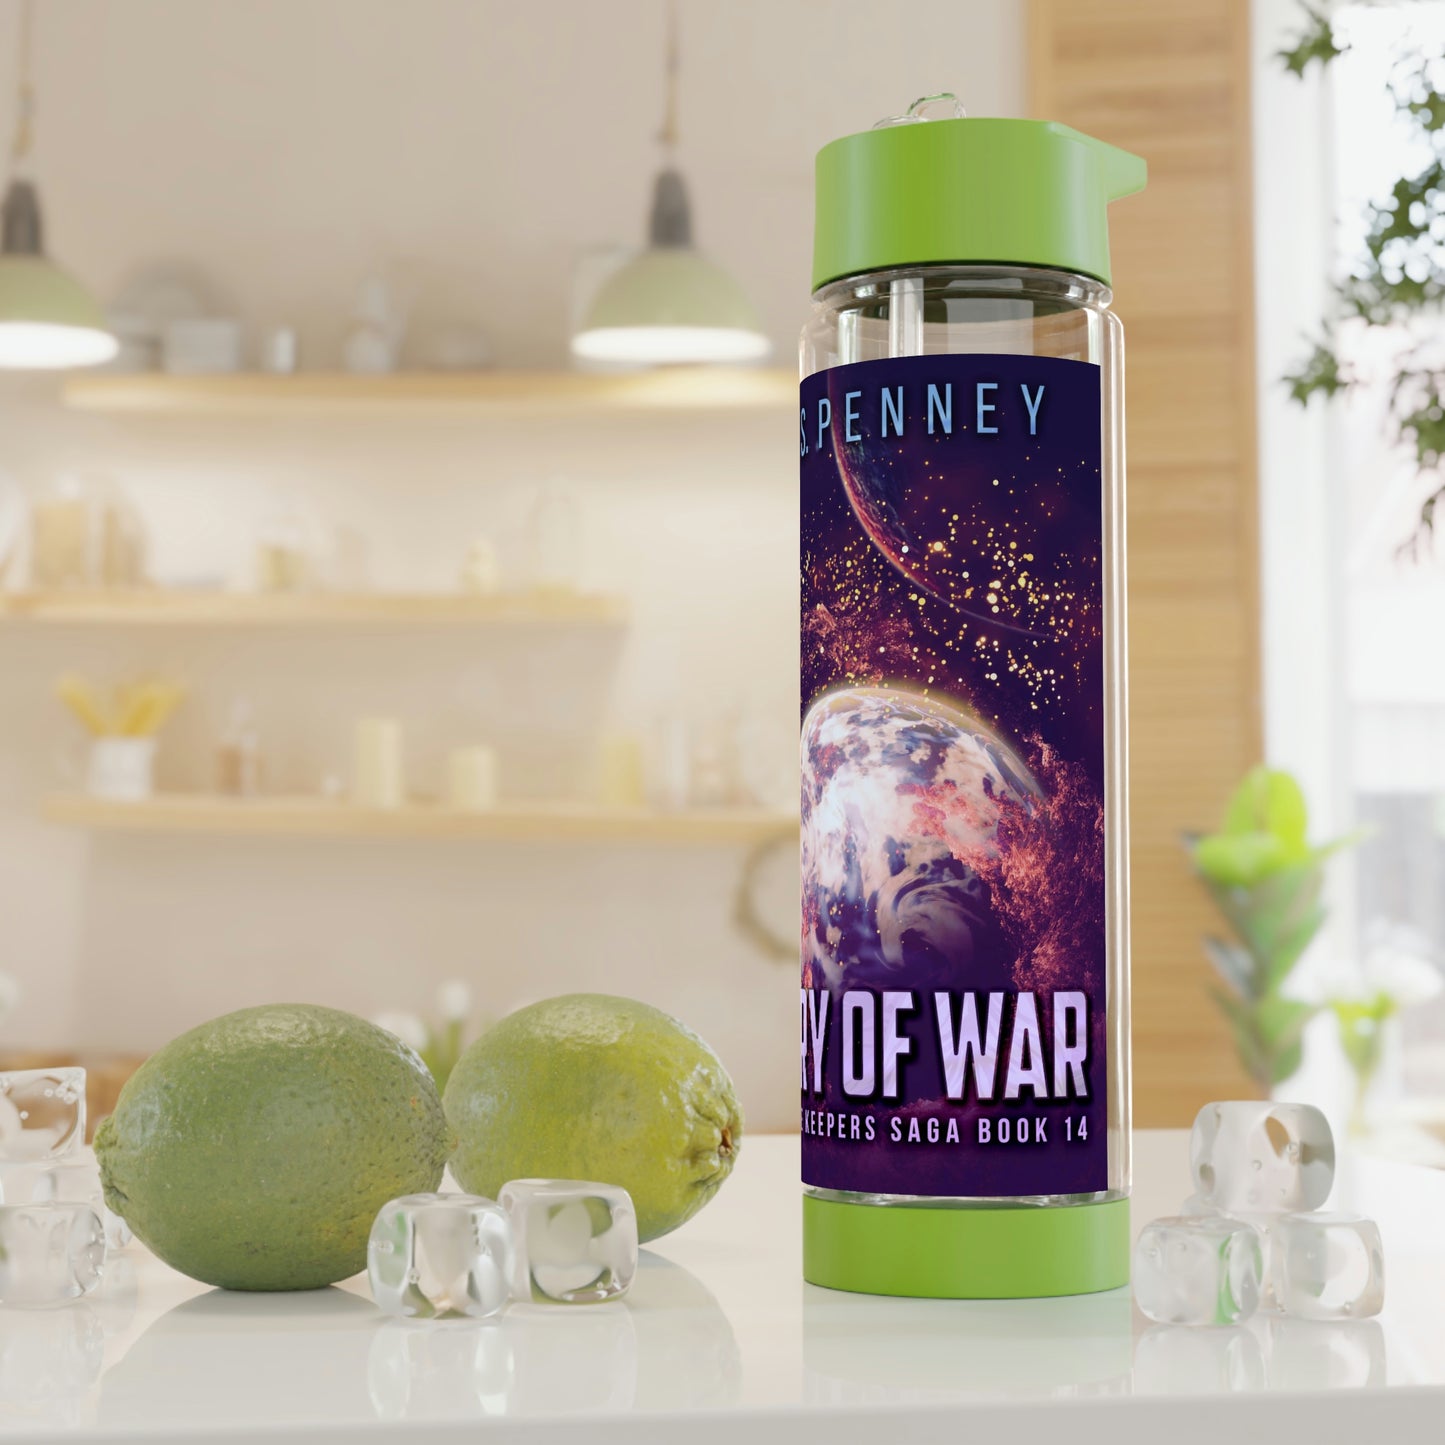 Fury Of War - Infuser Water Bottle